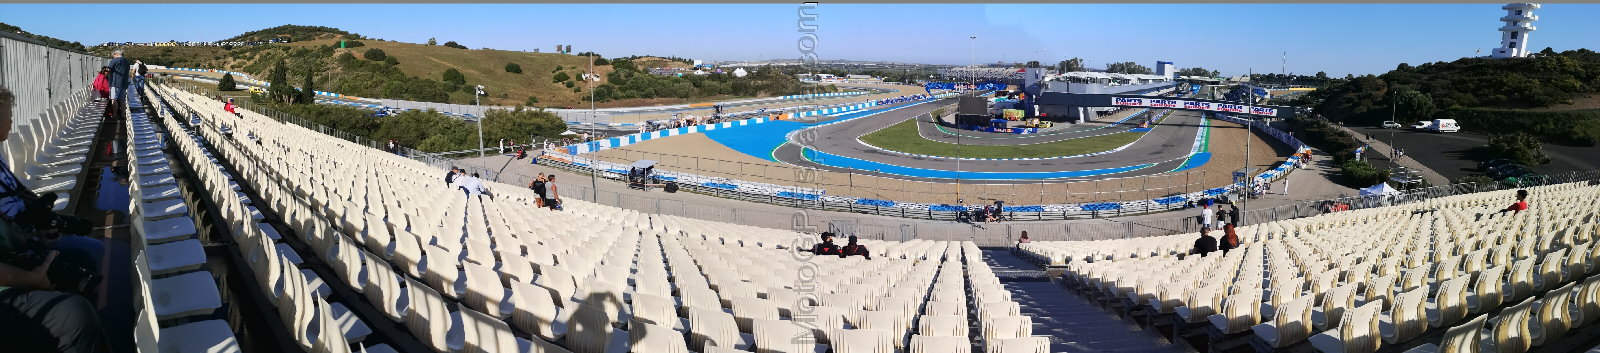 A-10 Grandstand at Circuito de Jerez-Angel Nieto